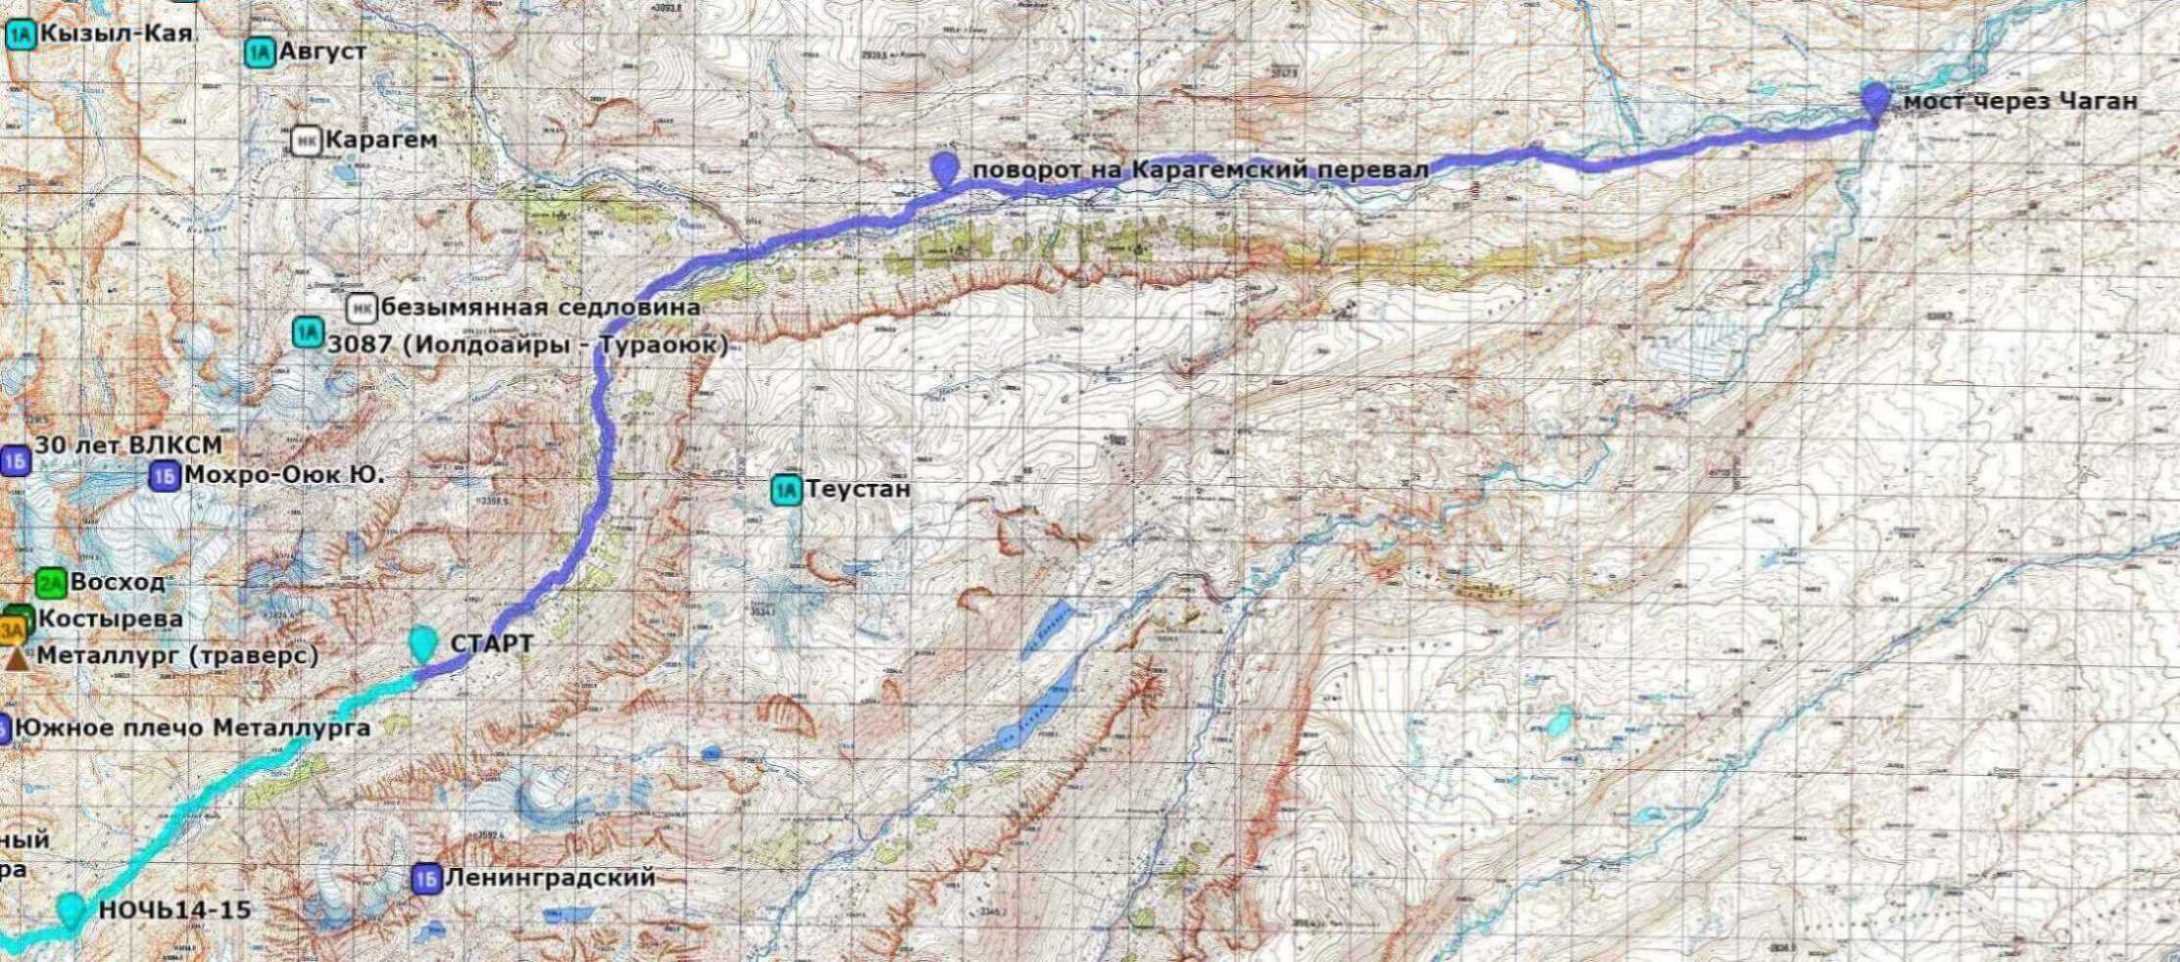 Отчёт о горном маршруте 2 к.с. по Ц.Алтаю